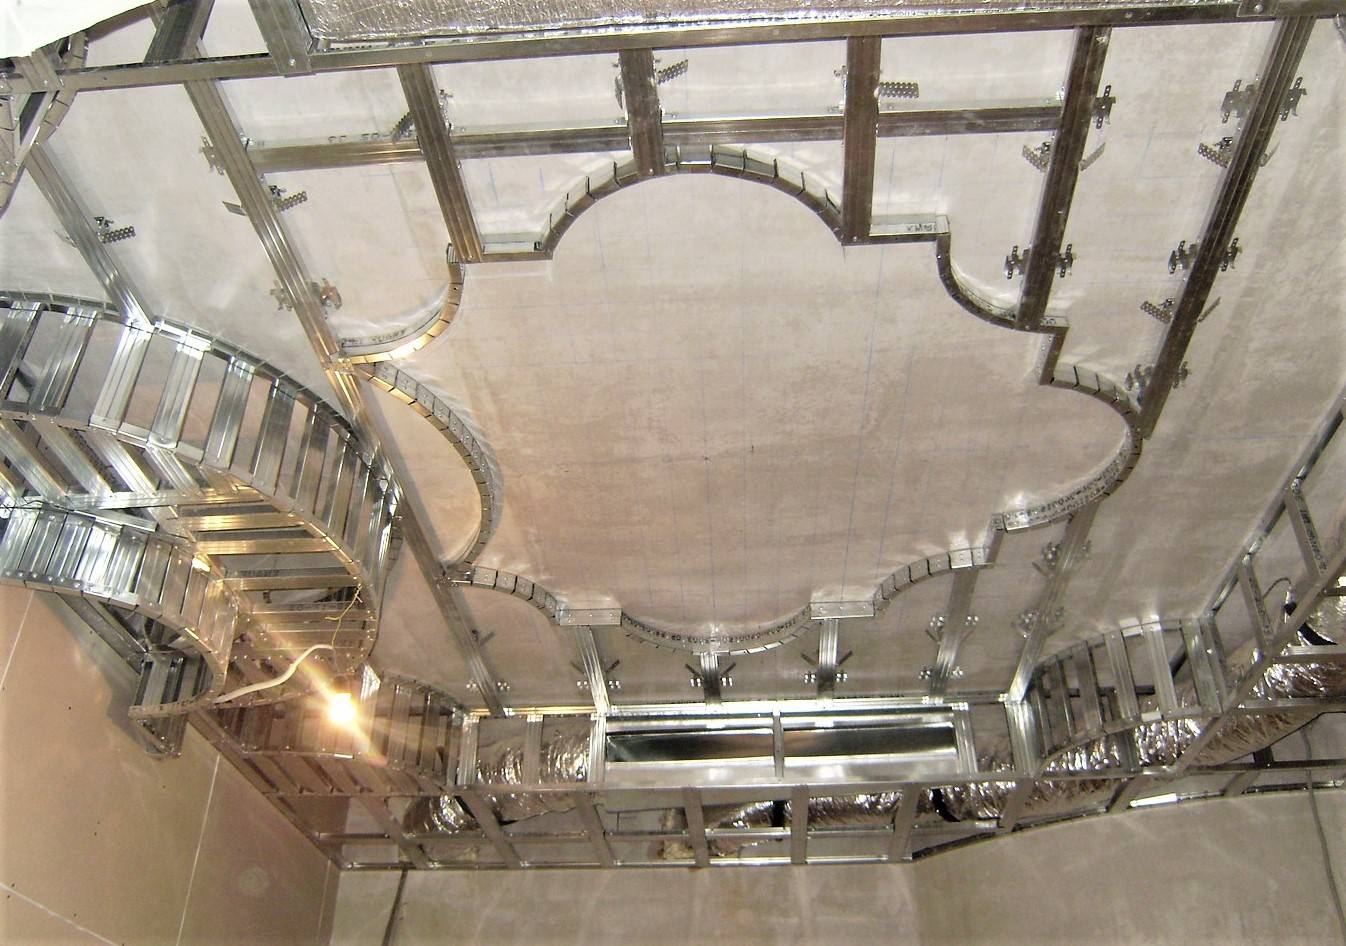 Потолок из гвл - отличия от гипсокартона и особенности монтажа